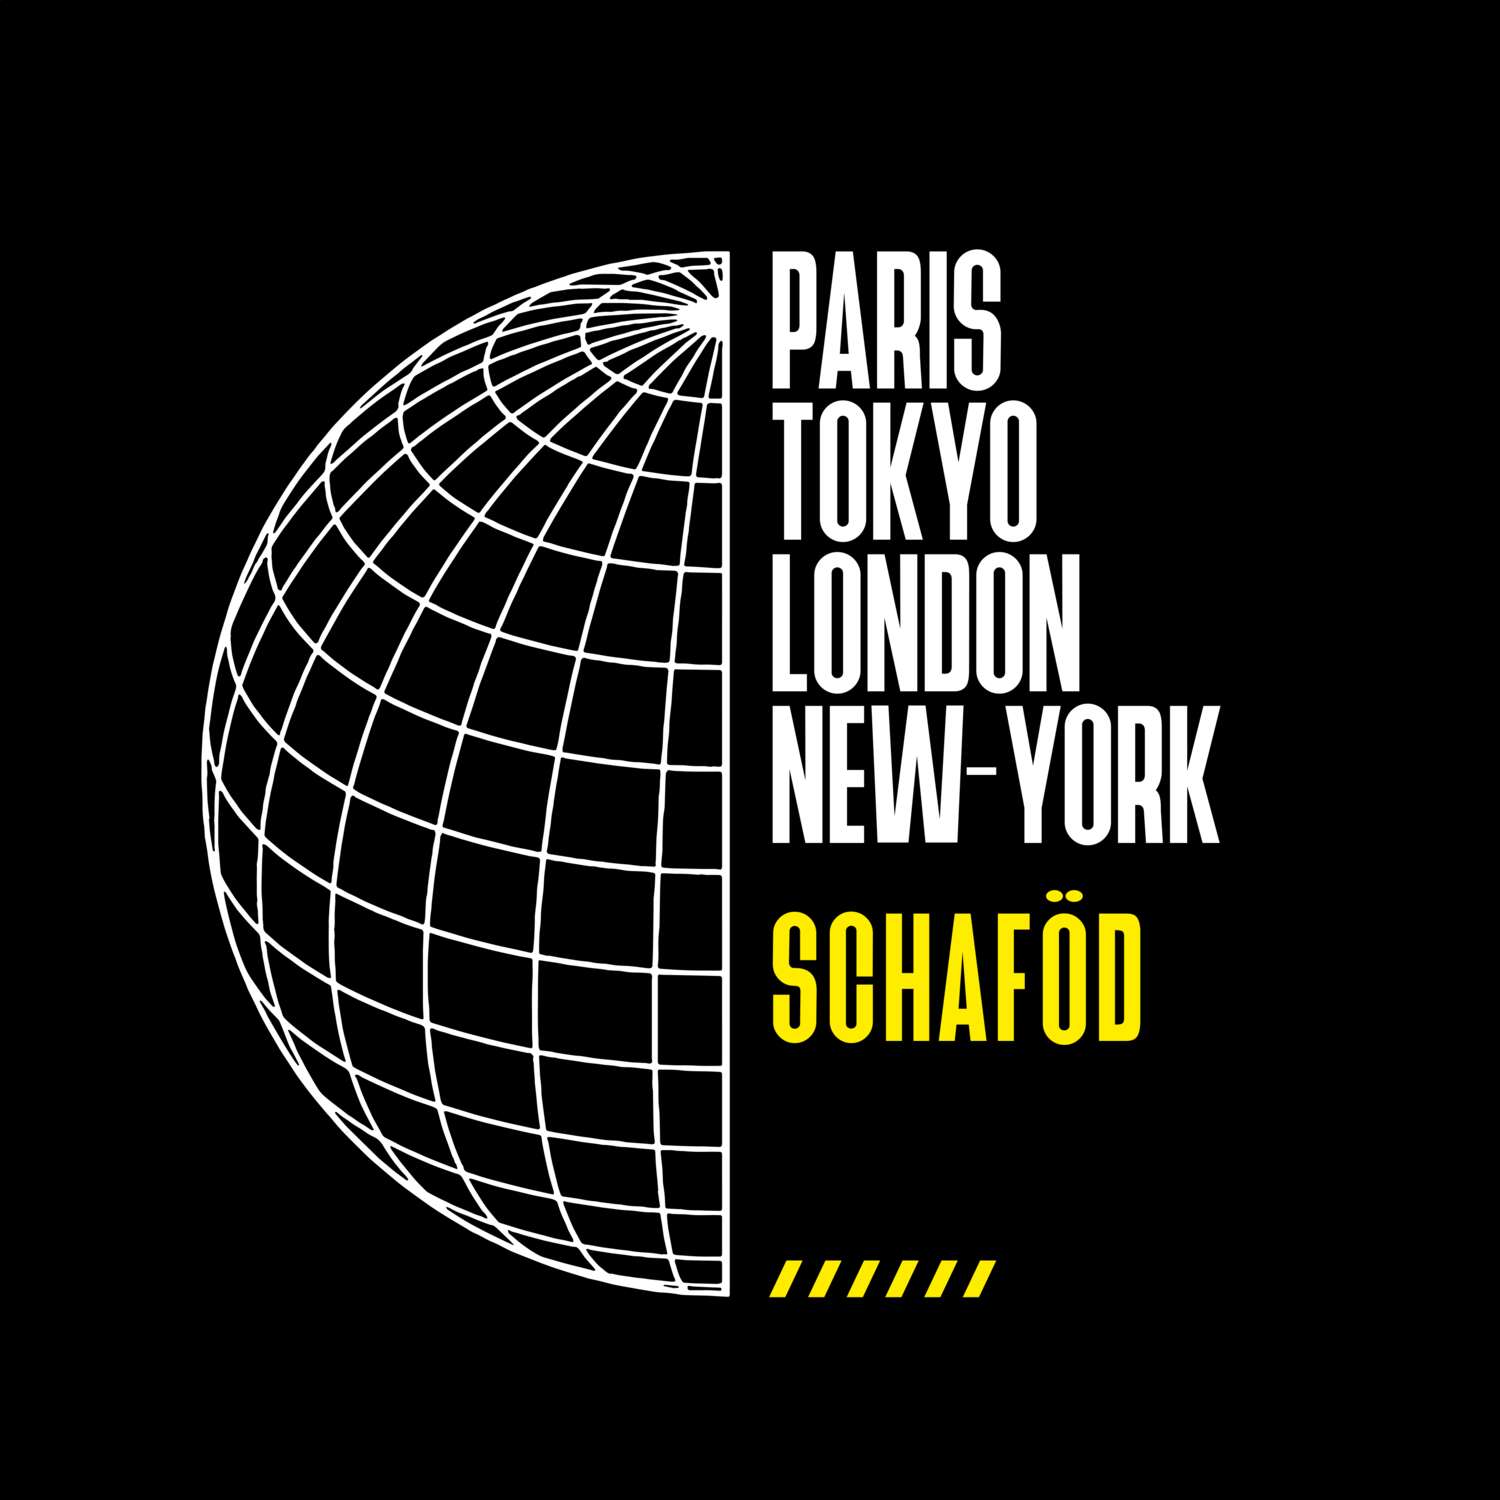 Schaföd T-Shirt »Paris Tokyo London«